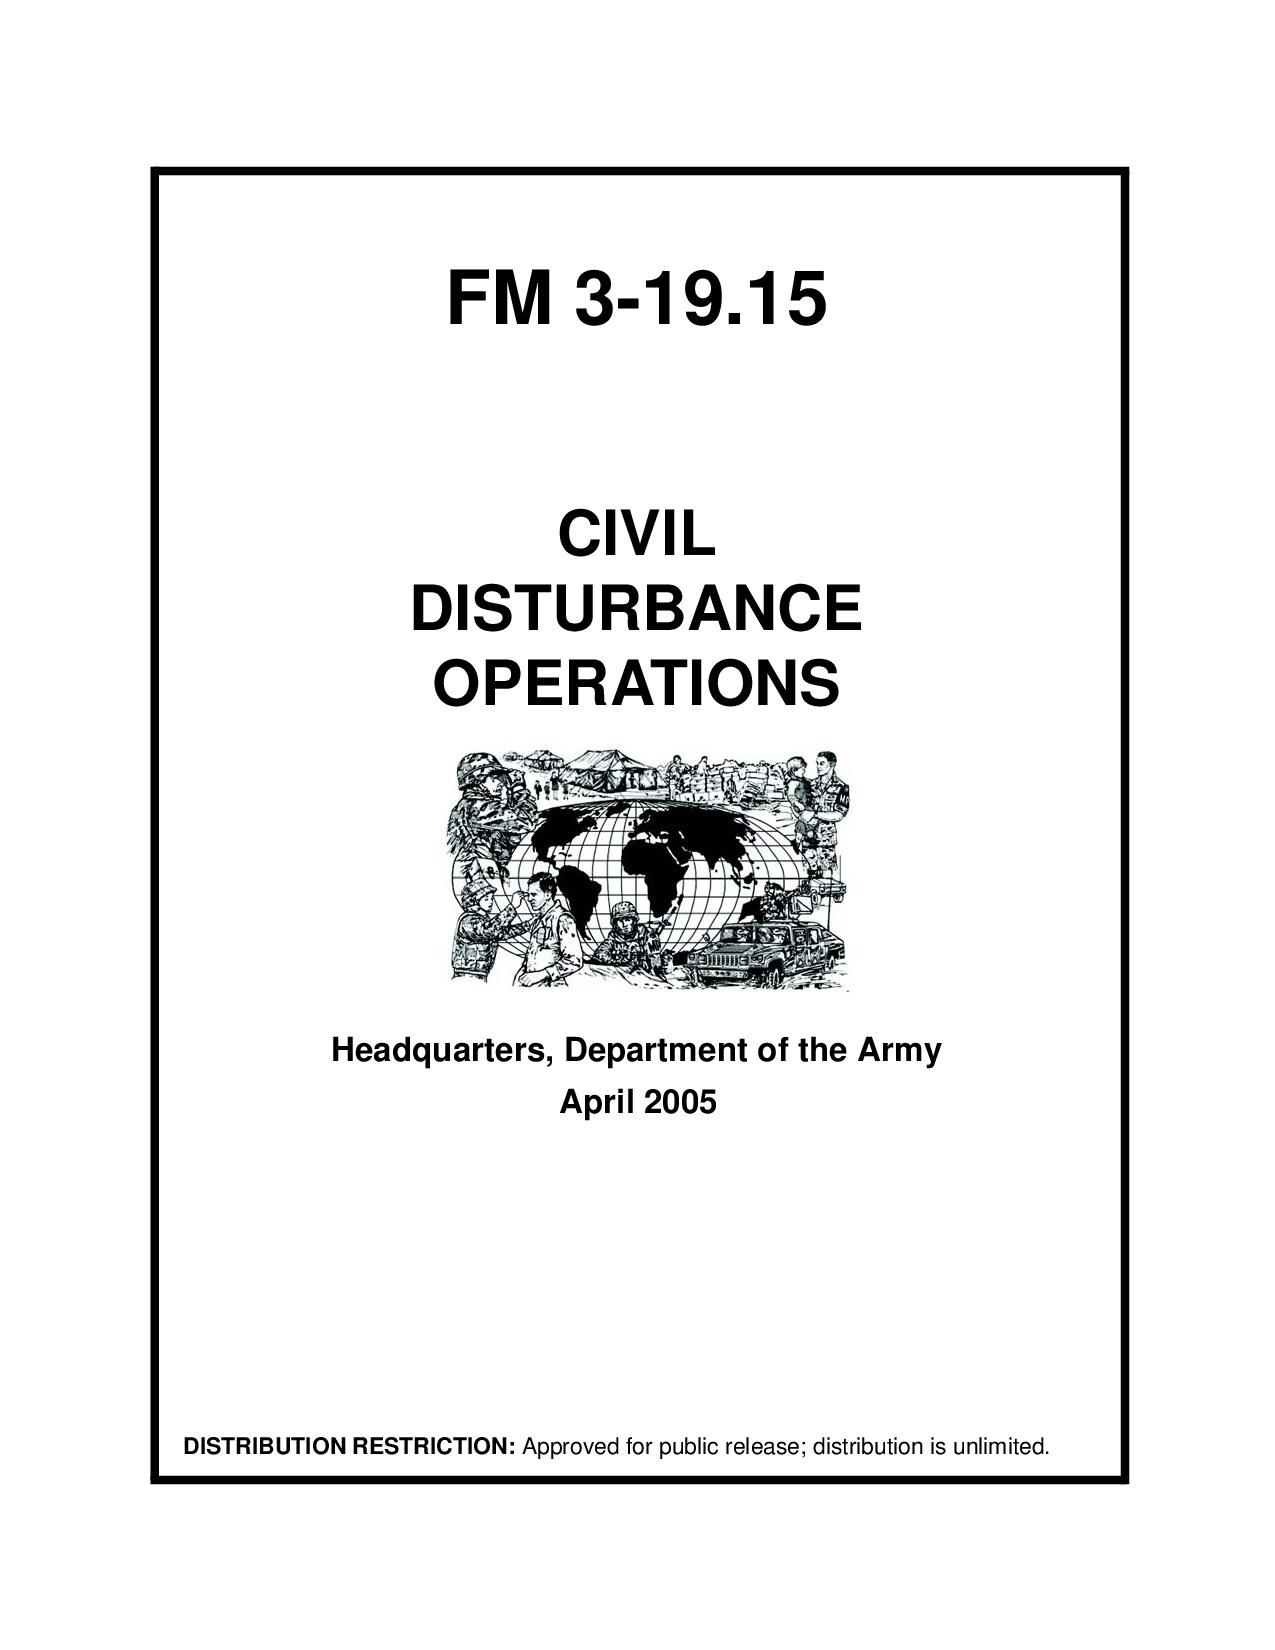 US Army Field Manual FM 3-19.15, Civil Disturbance Operations